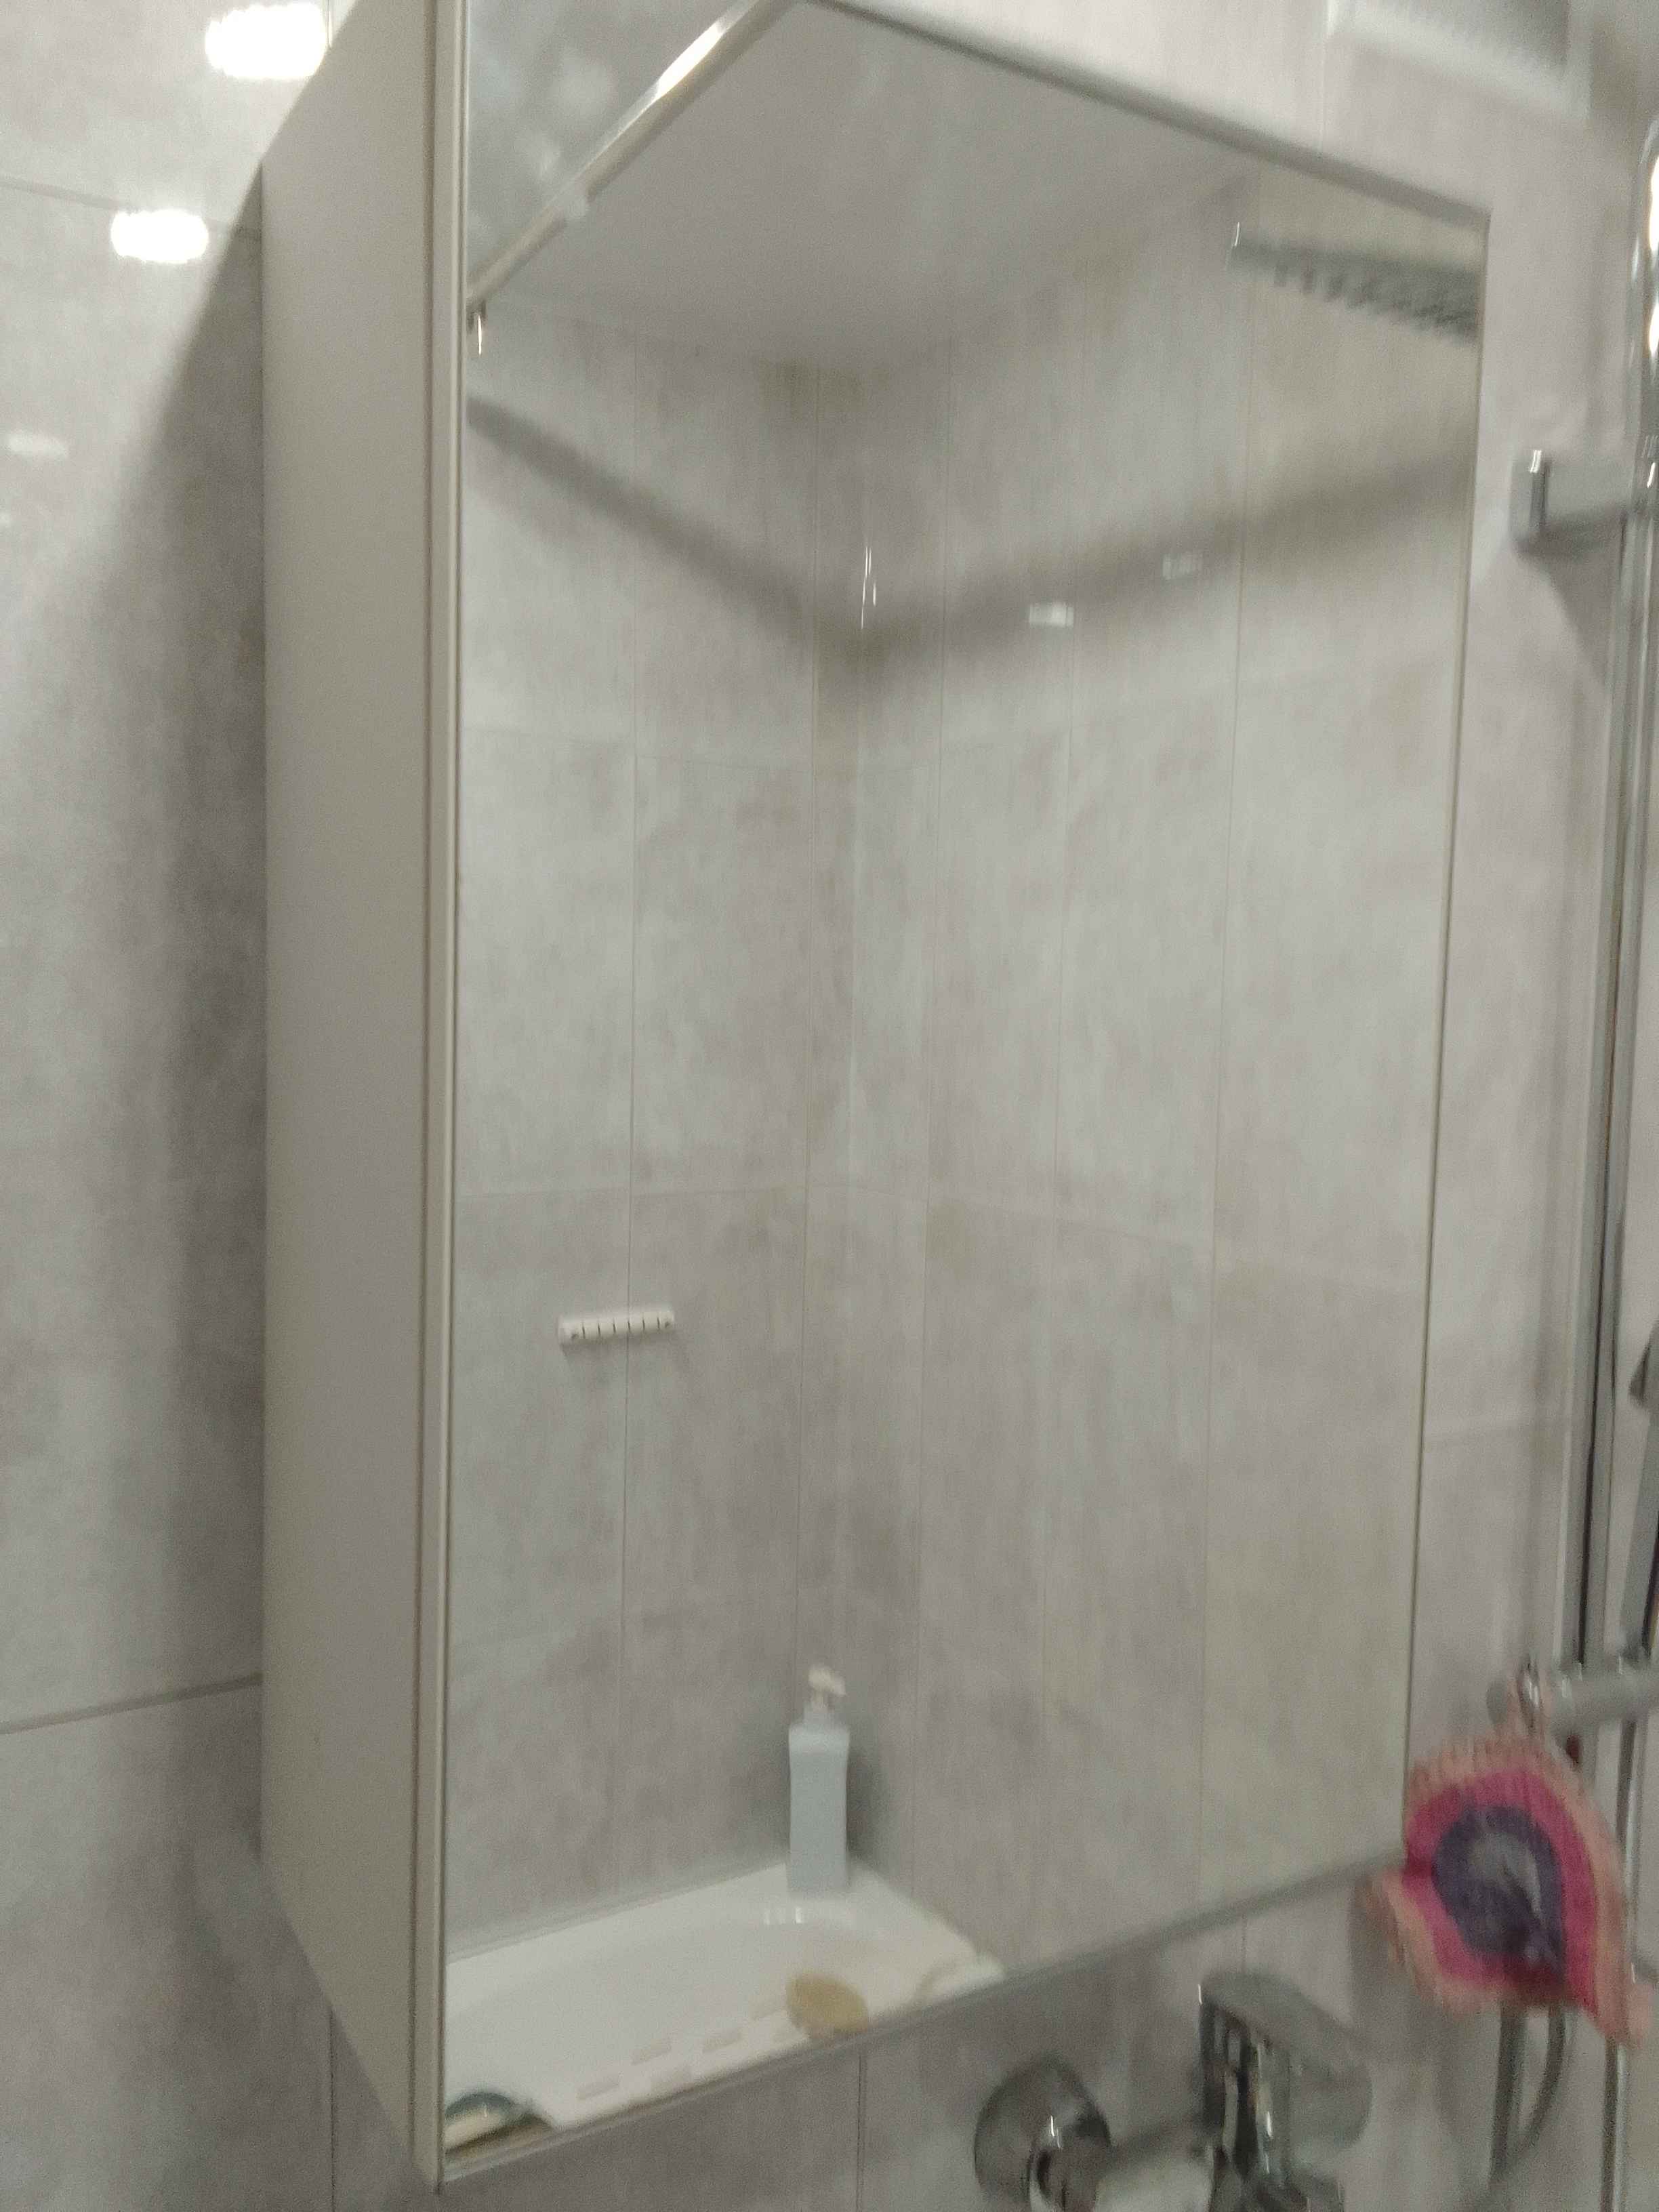 Сборка и навеска зеркального шкафа в ванной комнате